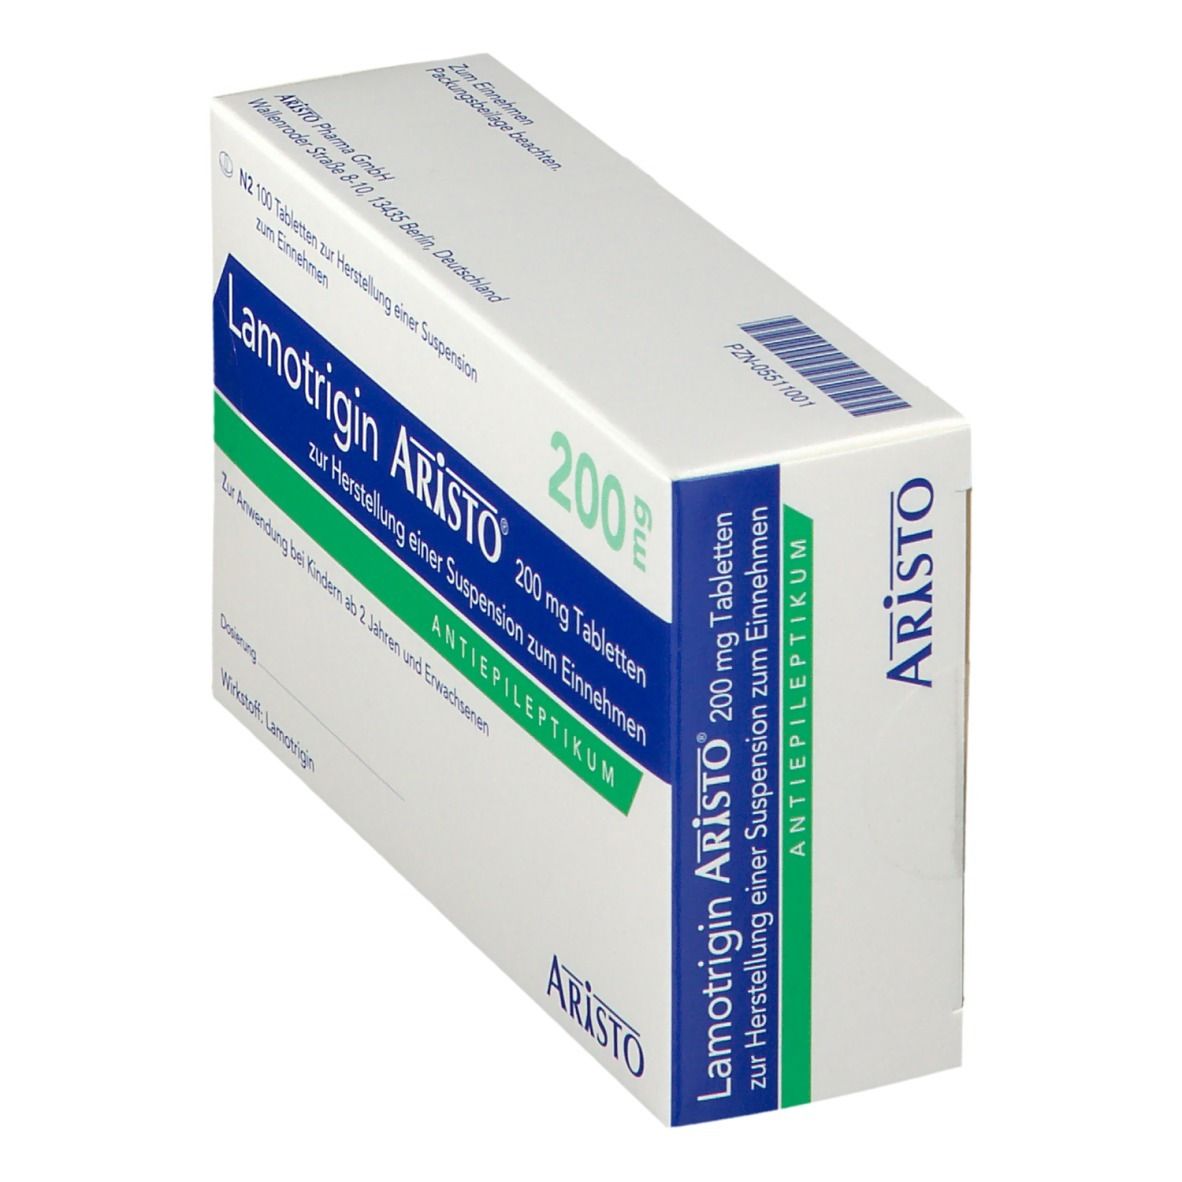 Lamotrigin Aristo® 200 mg